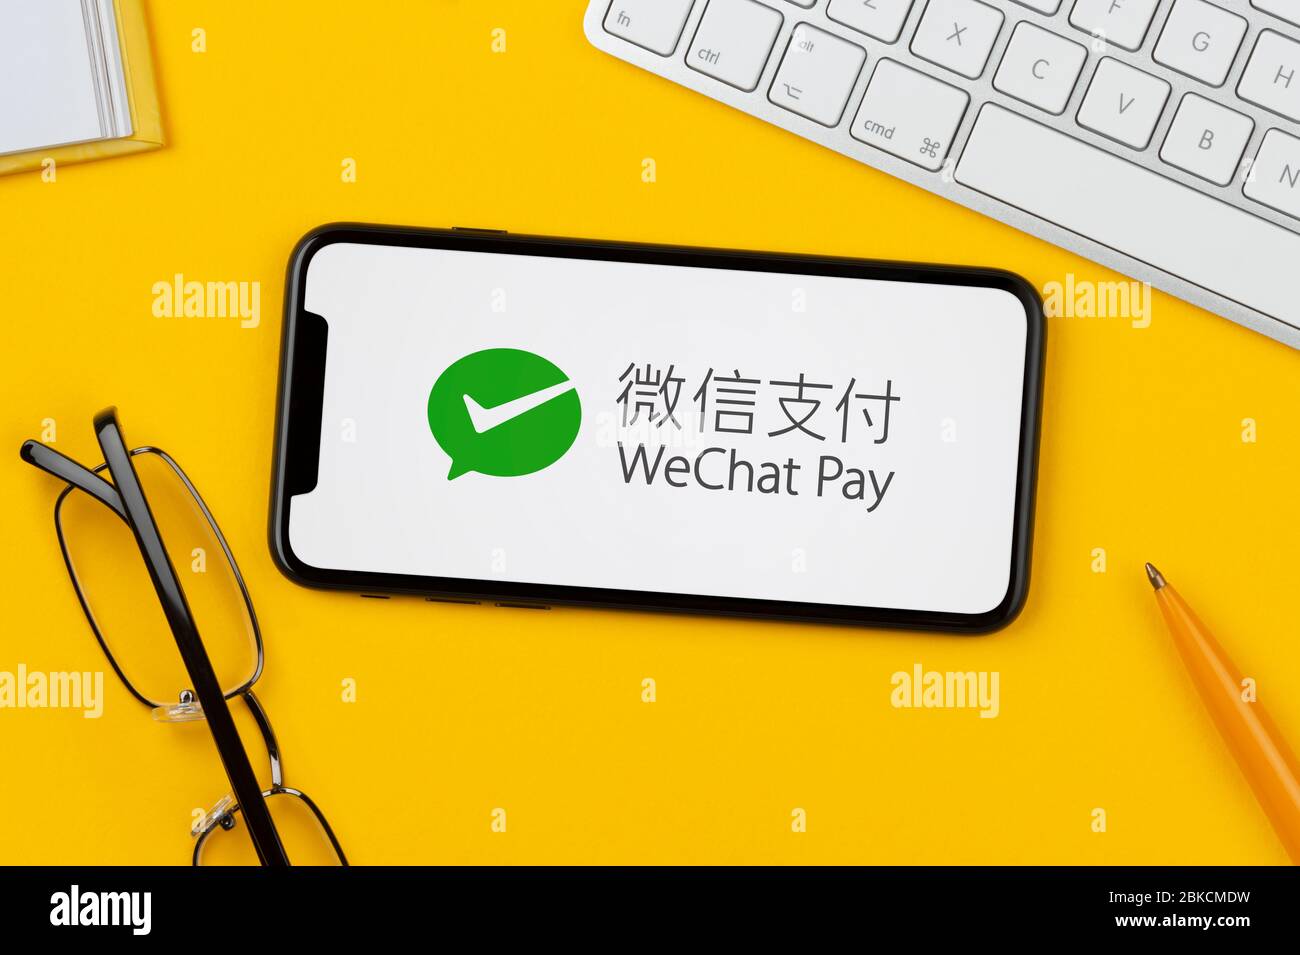 Un smartphone que muestra el logotipo de WeChat Pay descansa sobre un fondo amarillo junto con un teclado, gafas, lápiz y libro (sólo para uso editorial). Foto de stock